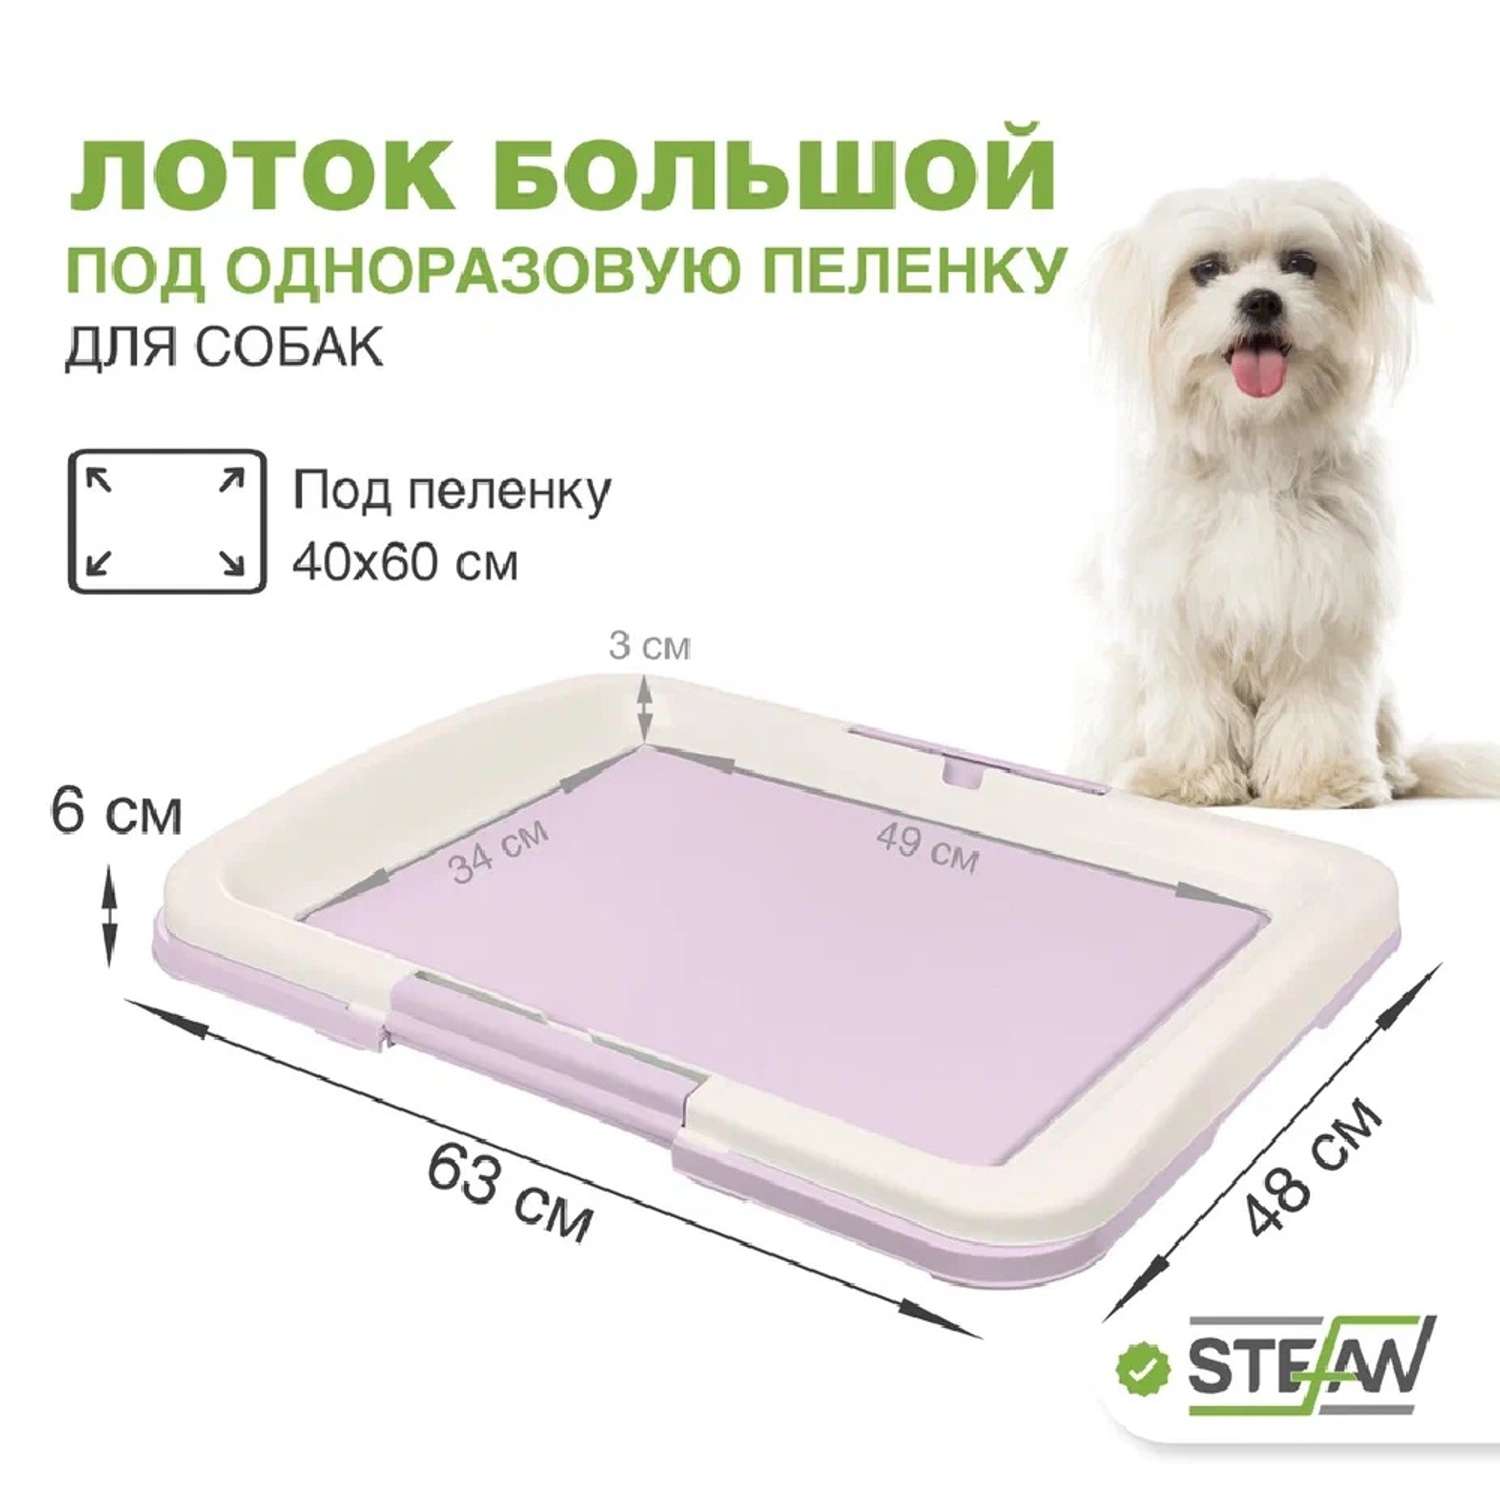 Туалет лоток для собак Stefan под одноразовую пеленку большой L 63x49 лиловый - фото 1